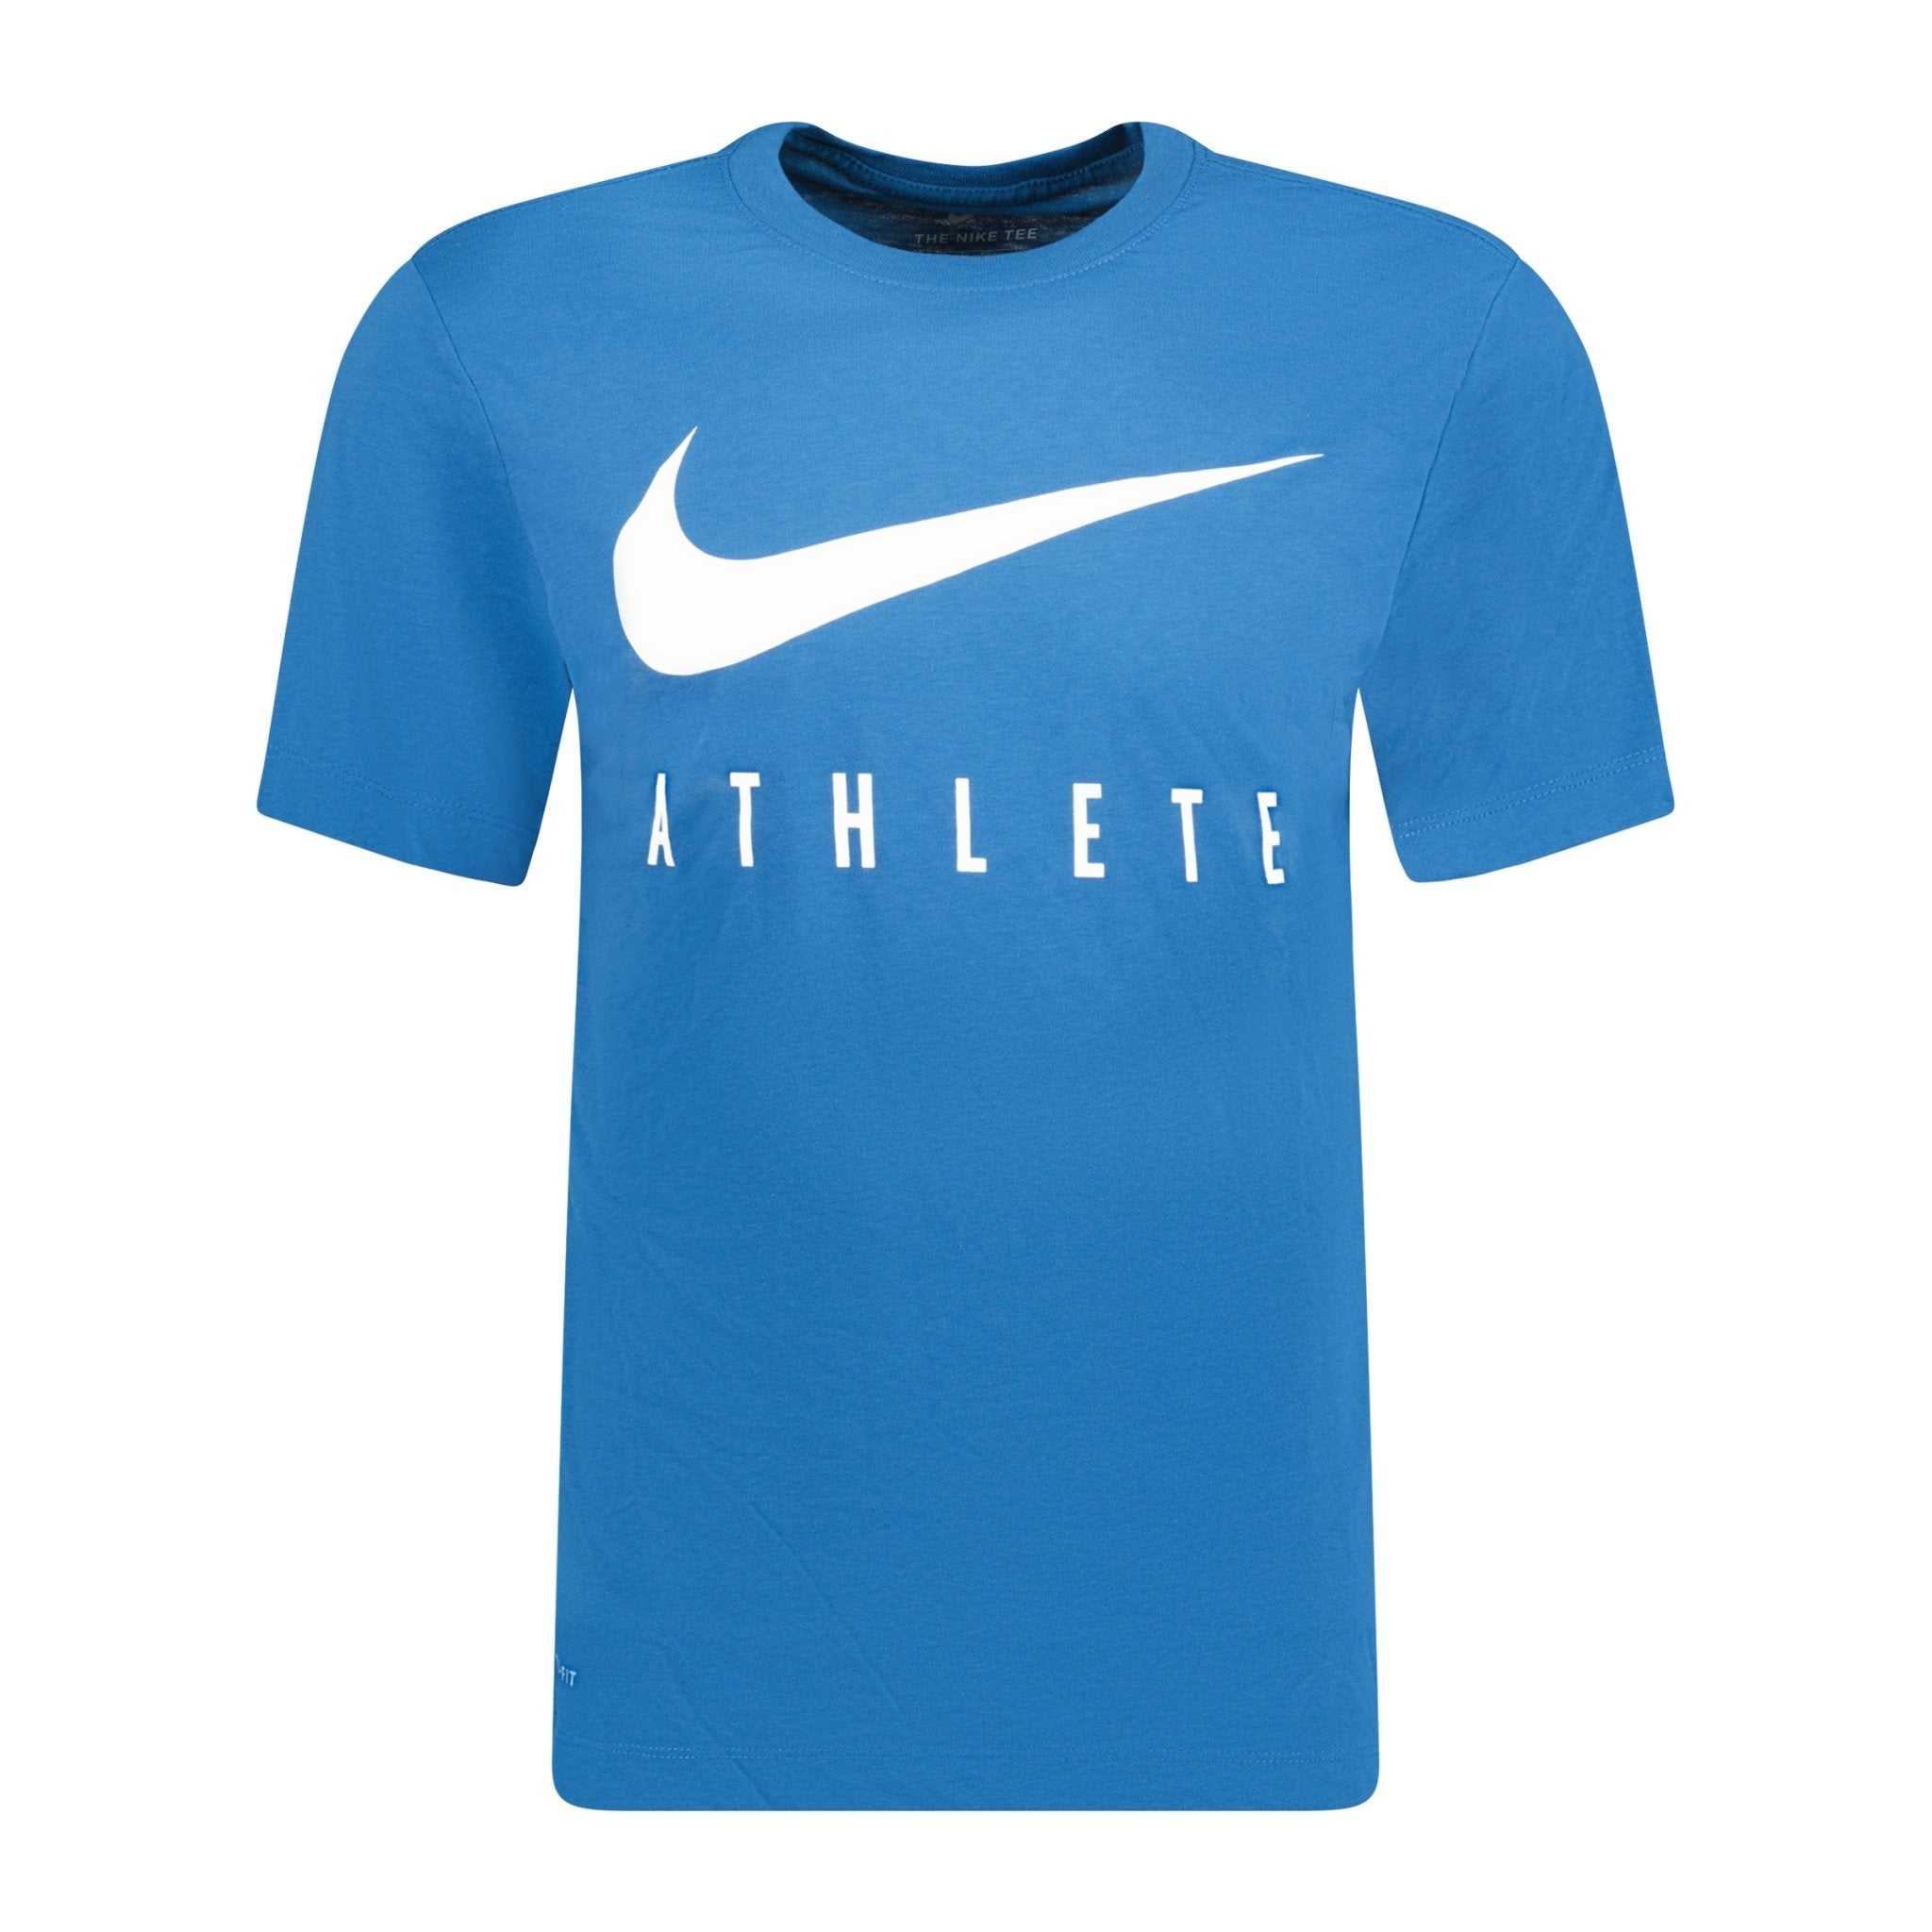 Nike Dri-Fit Training T-Shirt Blue | Boinclo ltd Outlet Sale